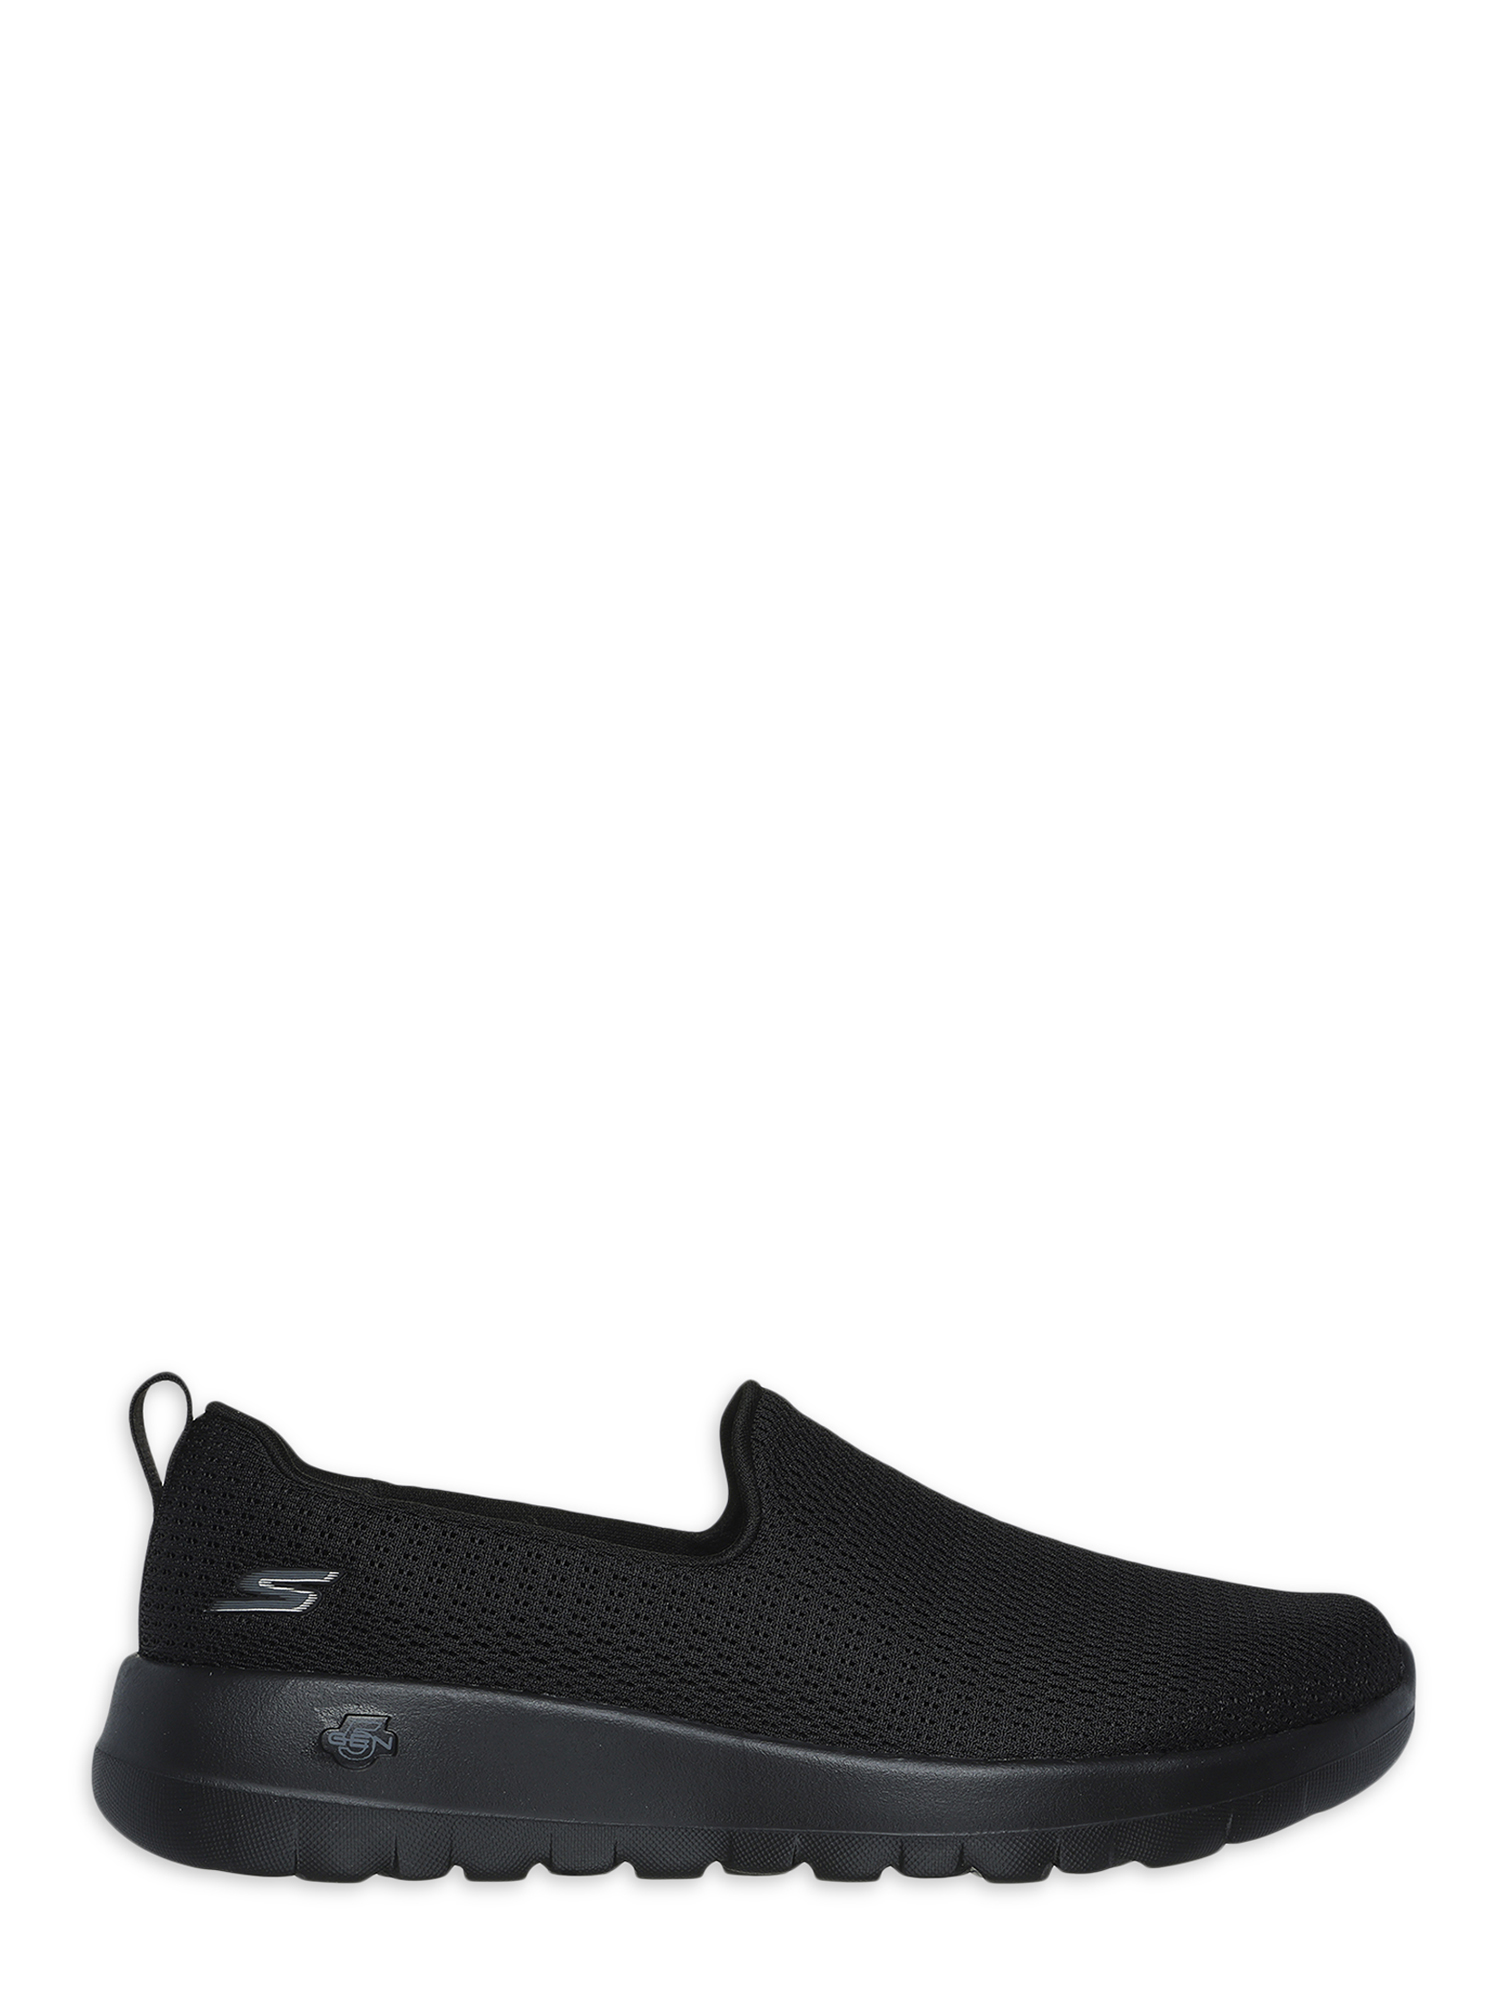 Skechers Women's Gowalk Joy Aurora Slip-on Sneaker, Wide Width Available - image 2 of 5